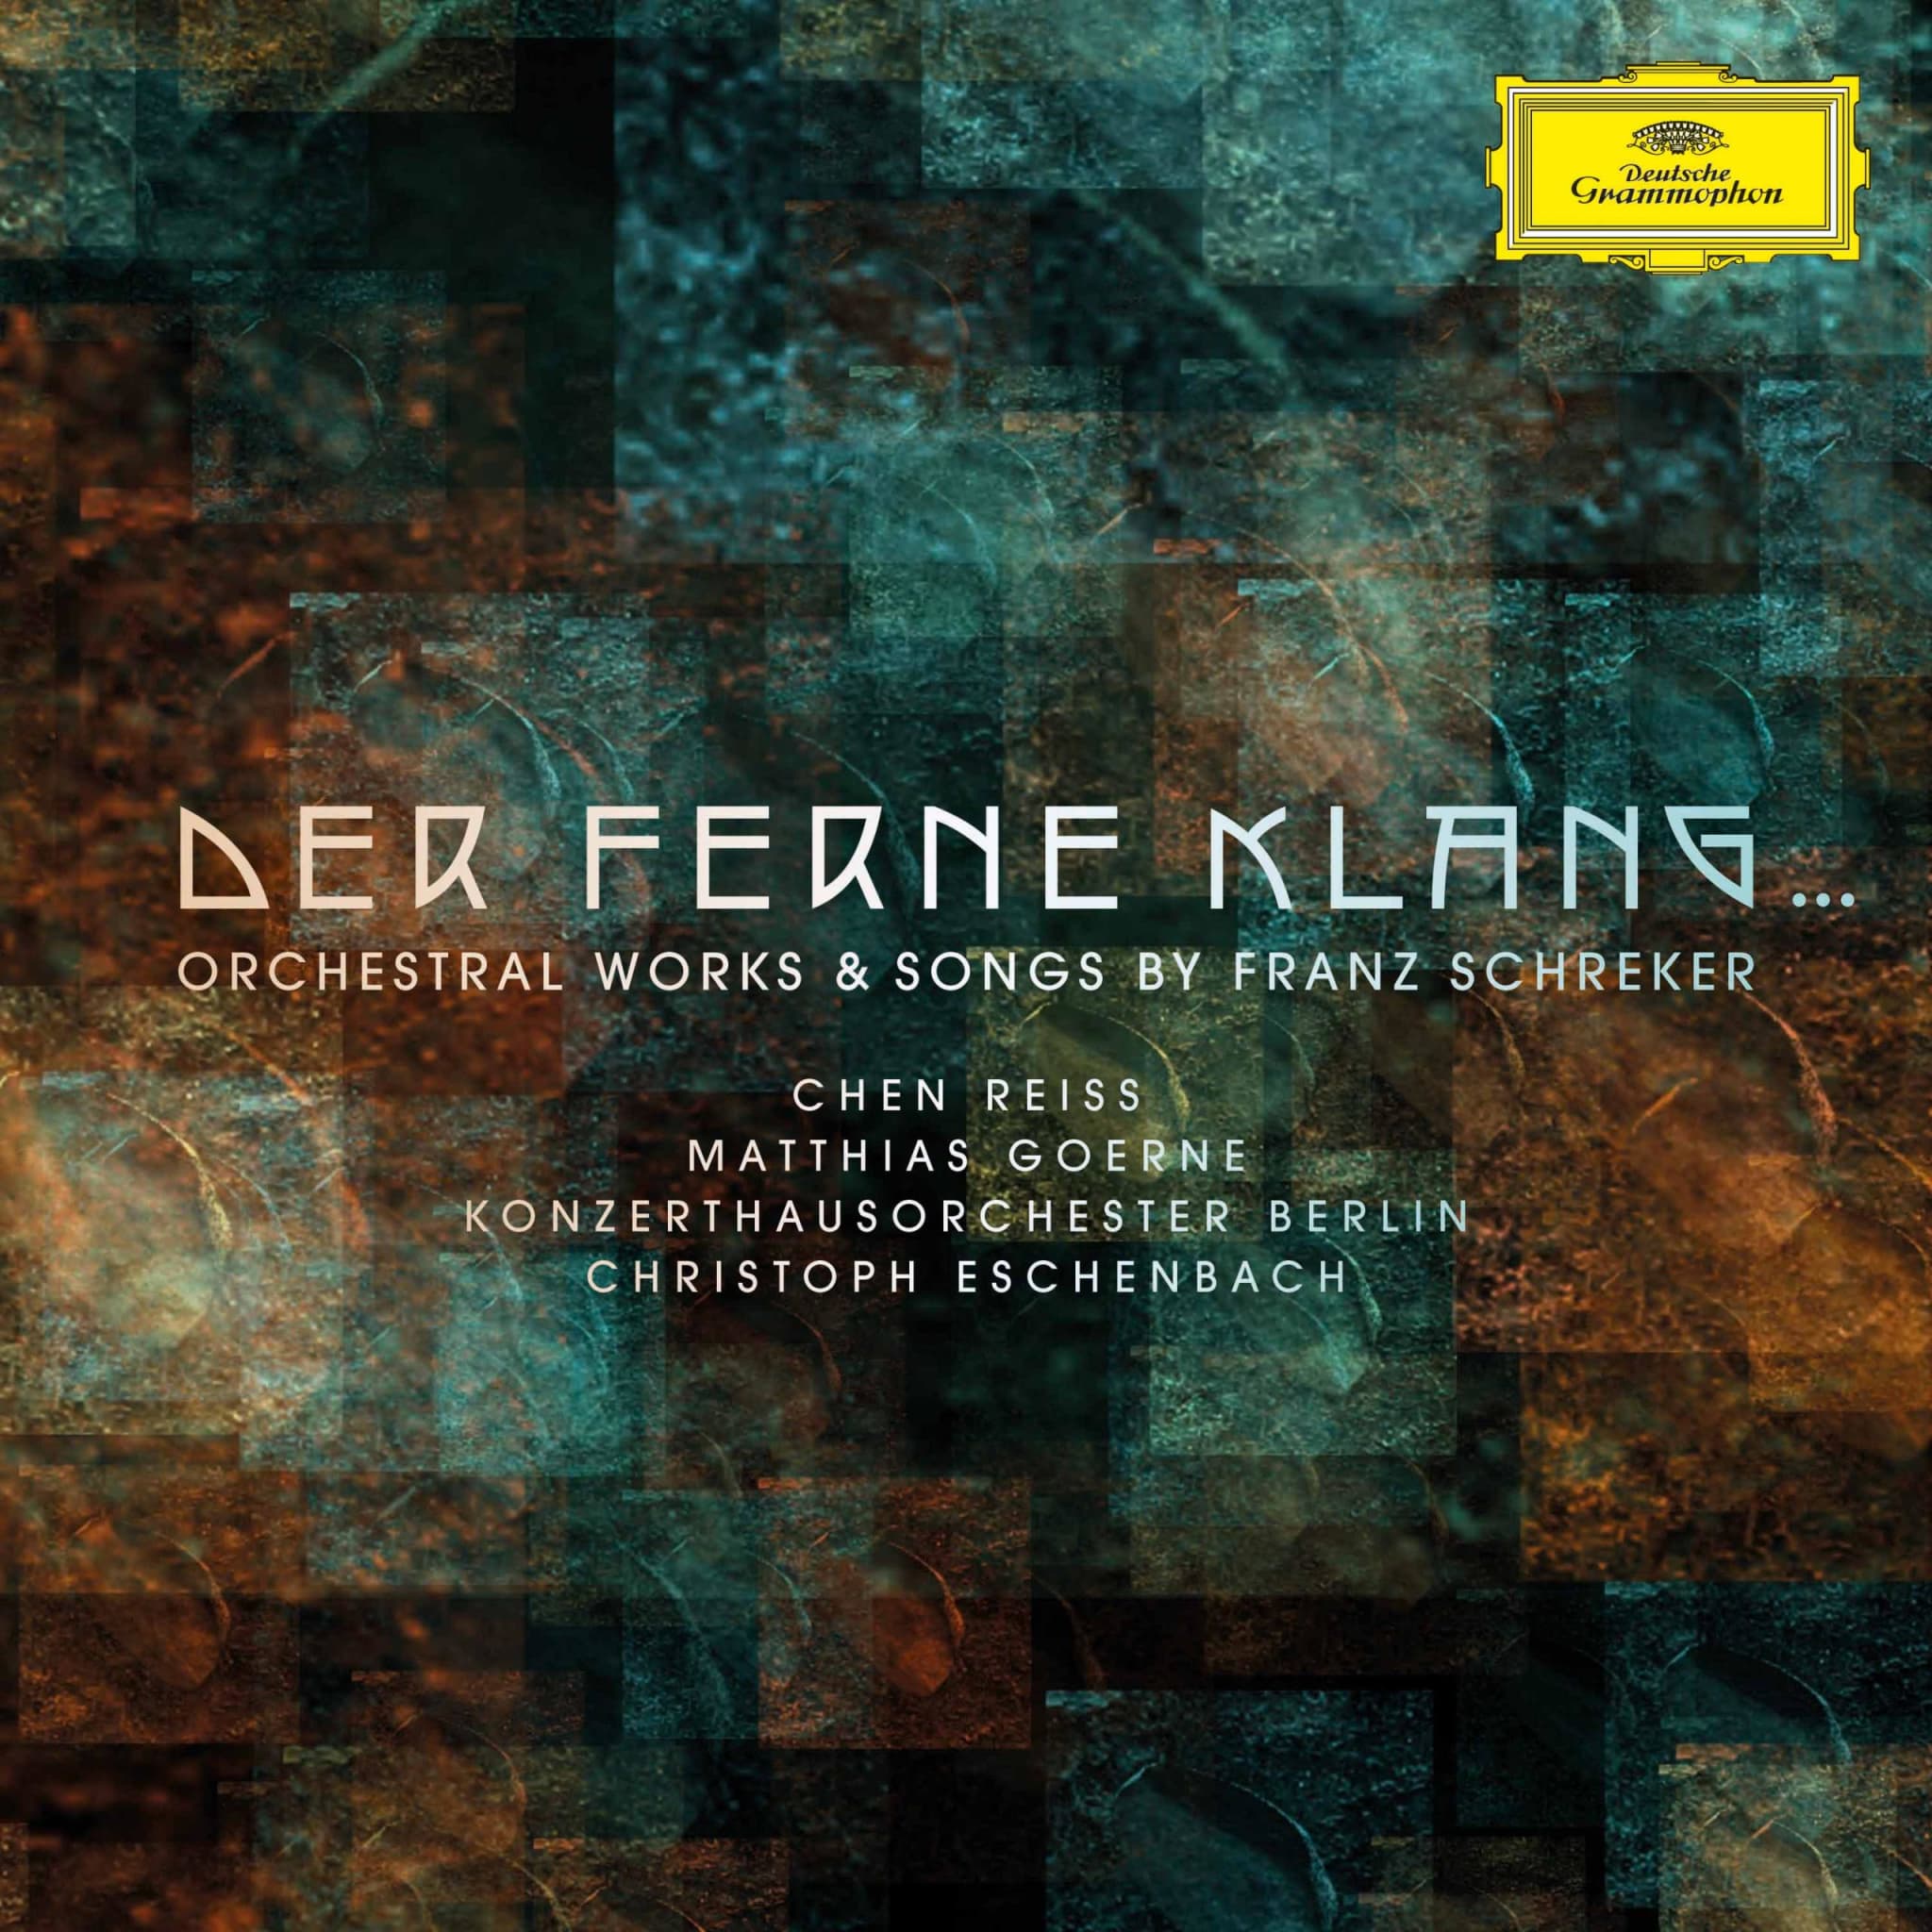 Der ferne Klang... Orchestral Works & Songs by Franz Schreker